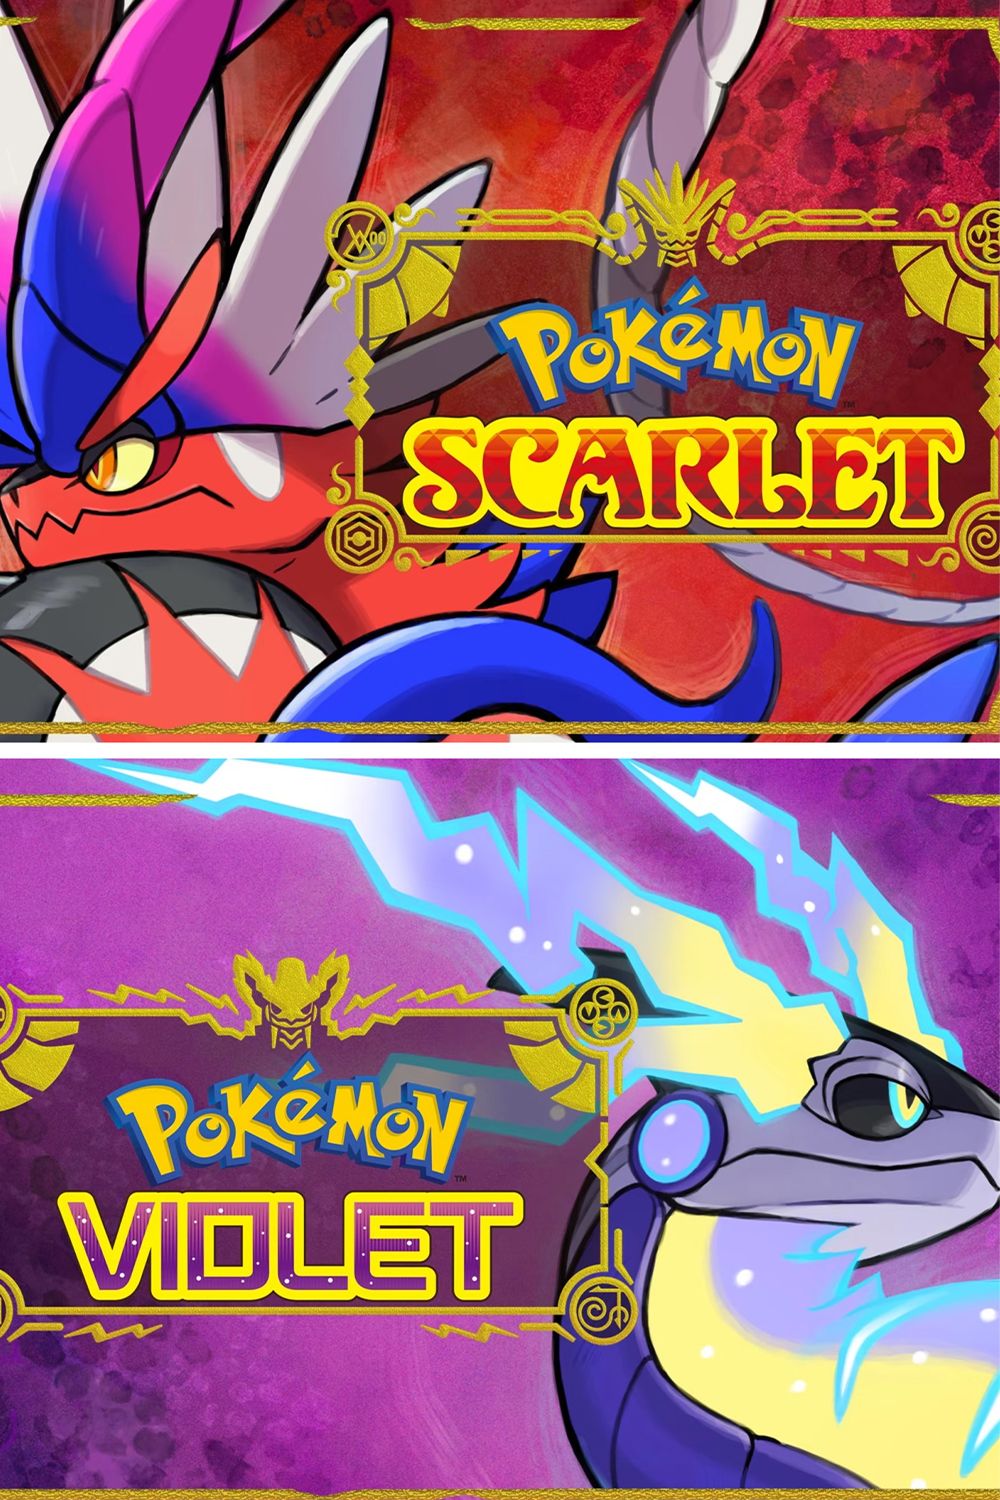 Juegos de pokemon escarlata y violeta